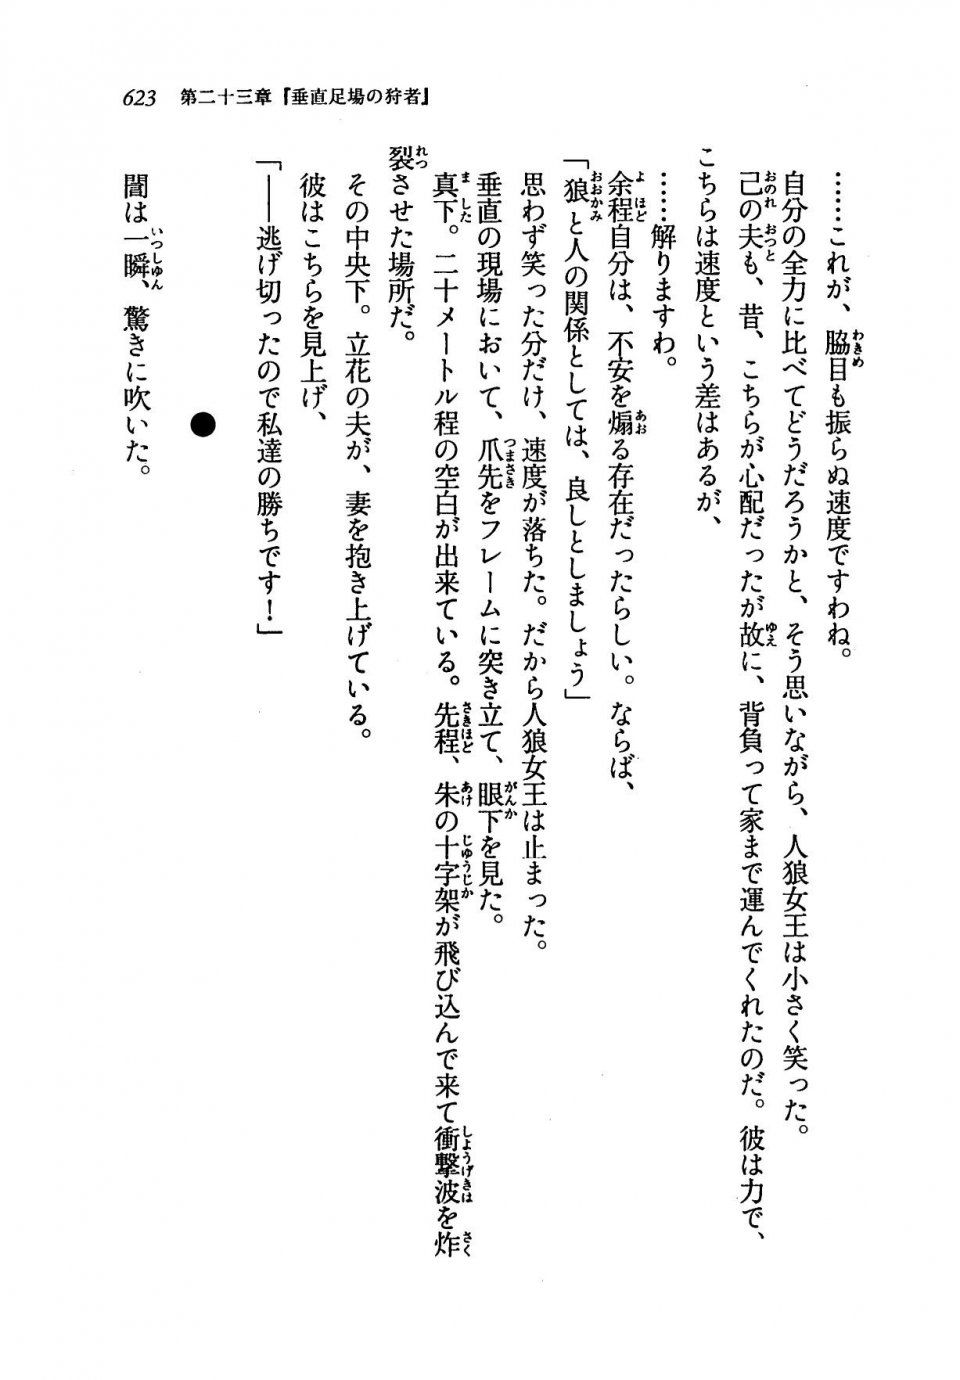 Kyoukai Senjou no Horizon LN Vol 19(8A) - Photo #623